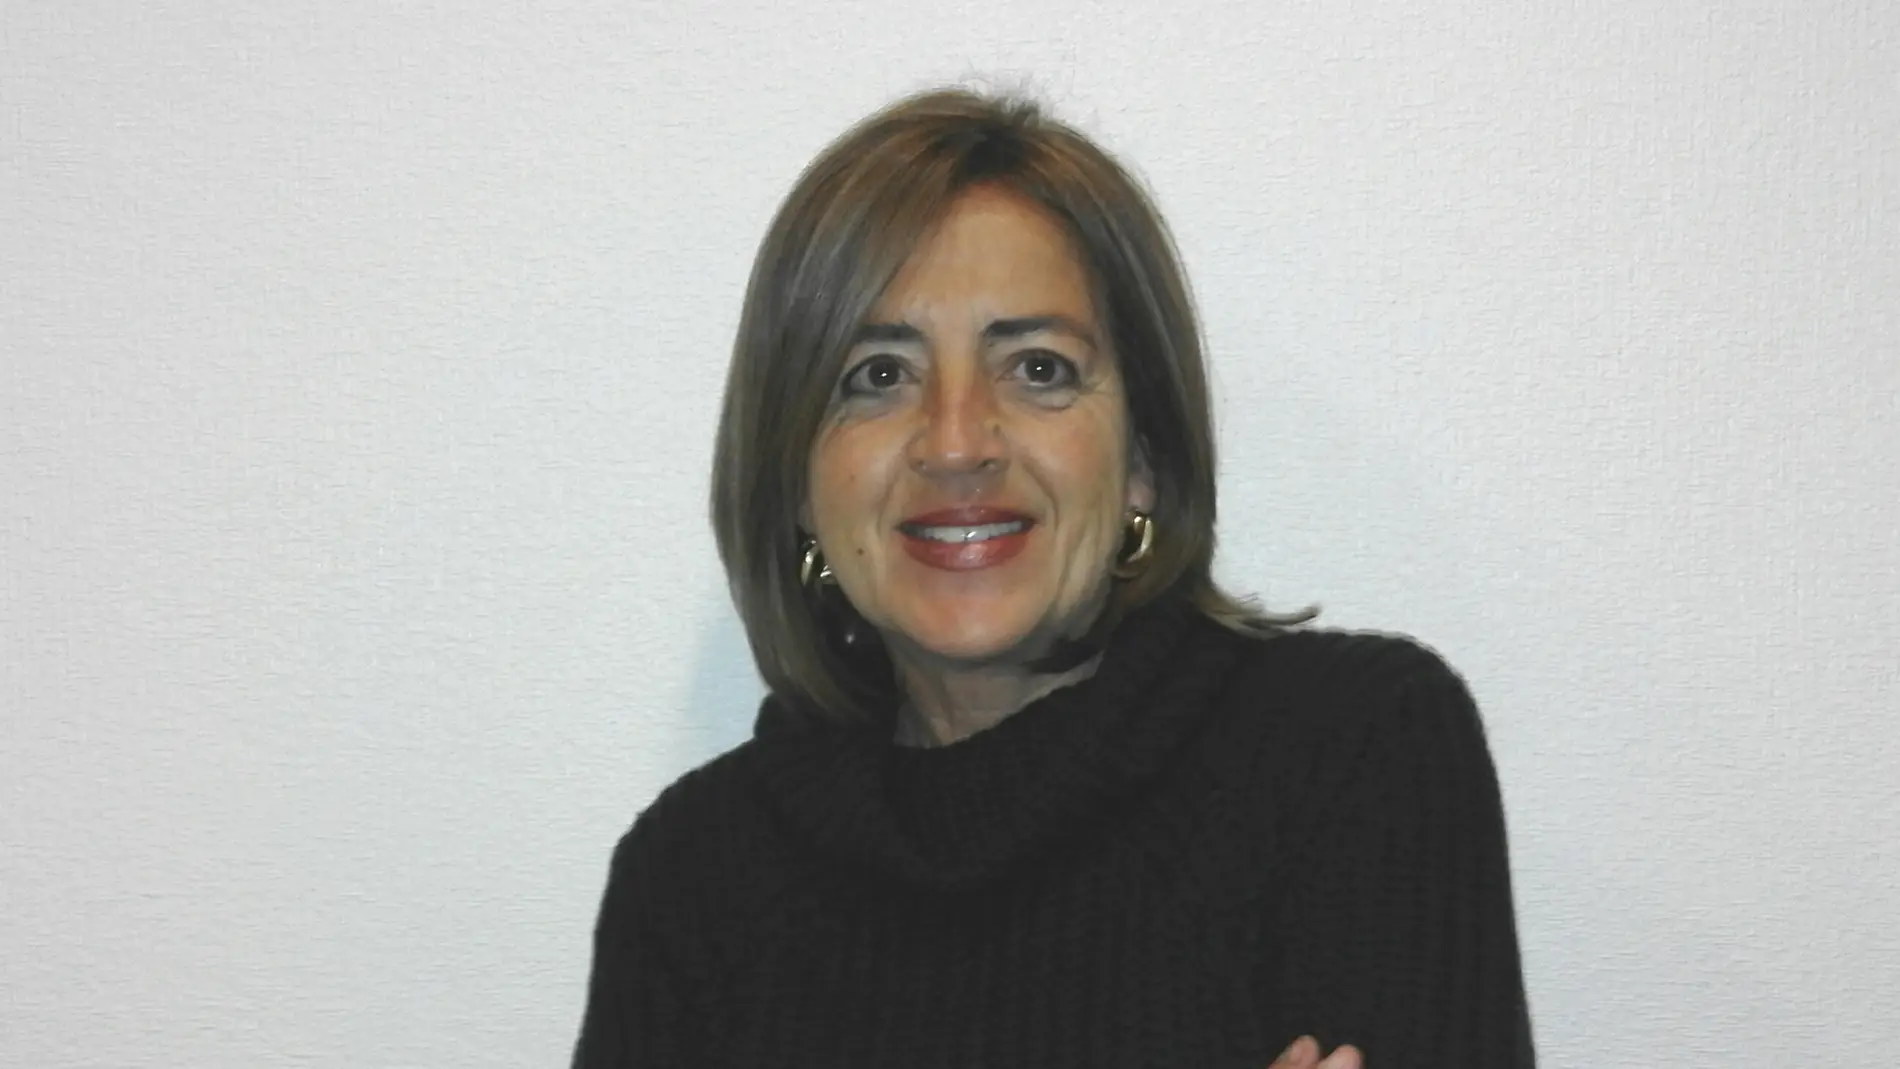 Victoria Rodríguez, jurista, politóloga y profesora universitaria.